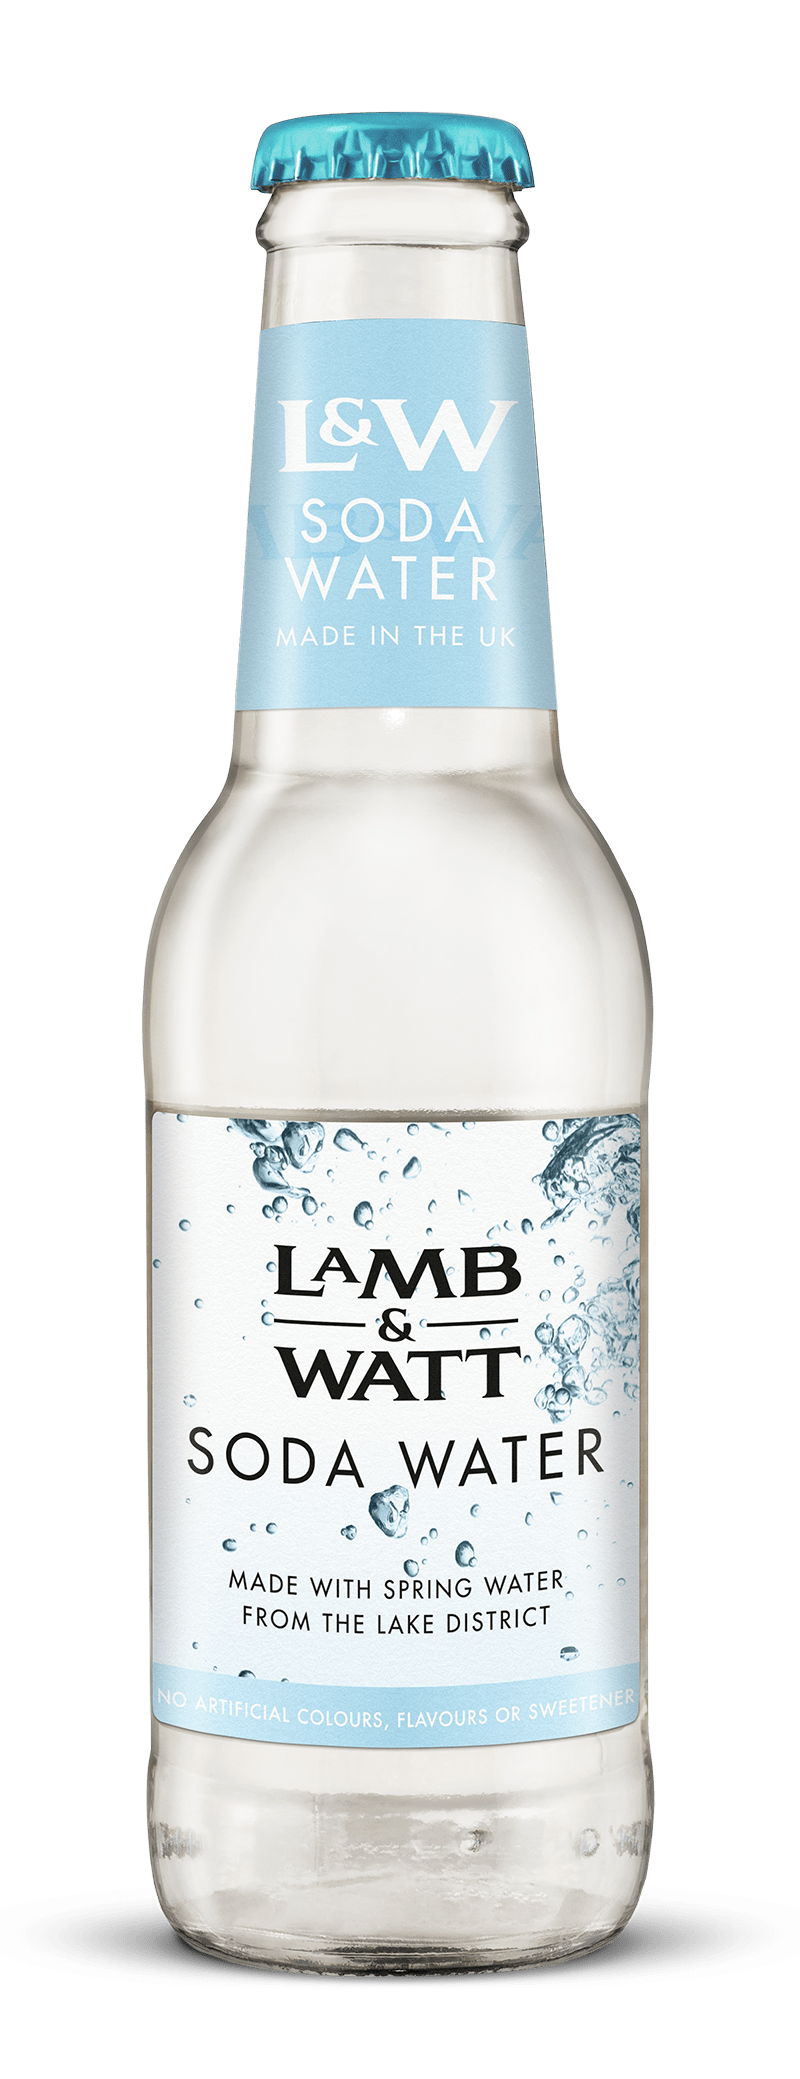 Lamb & Watt Soda